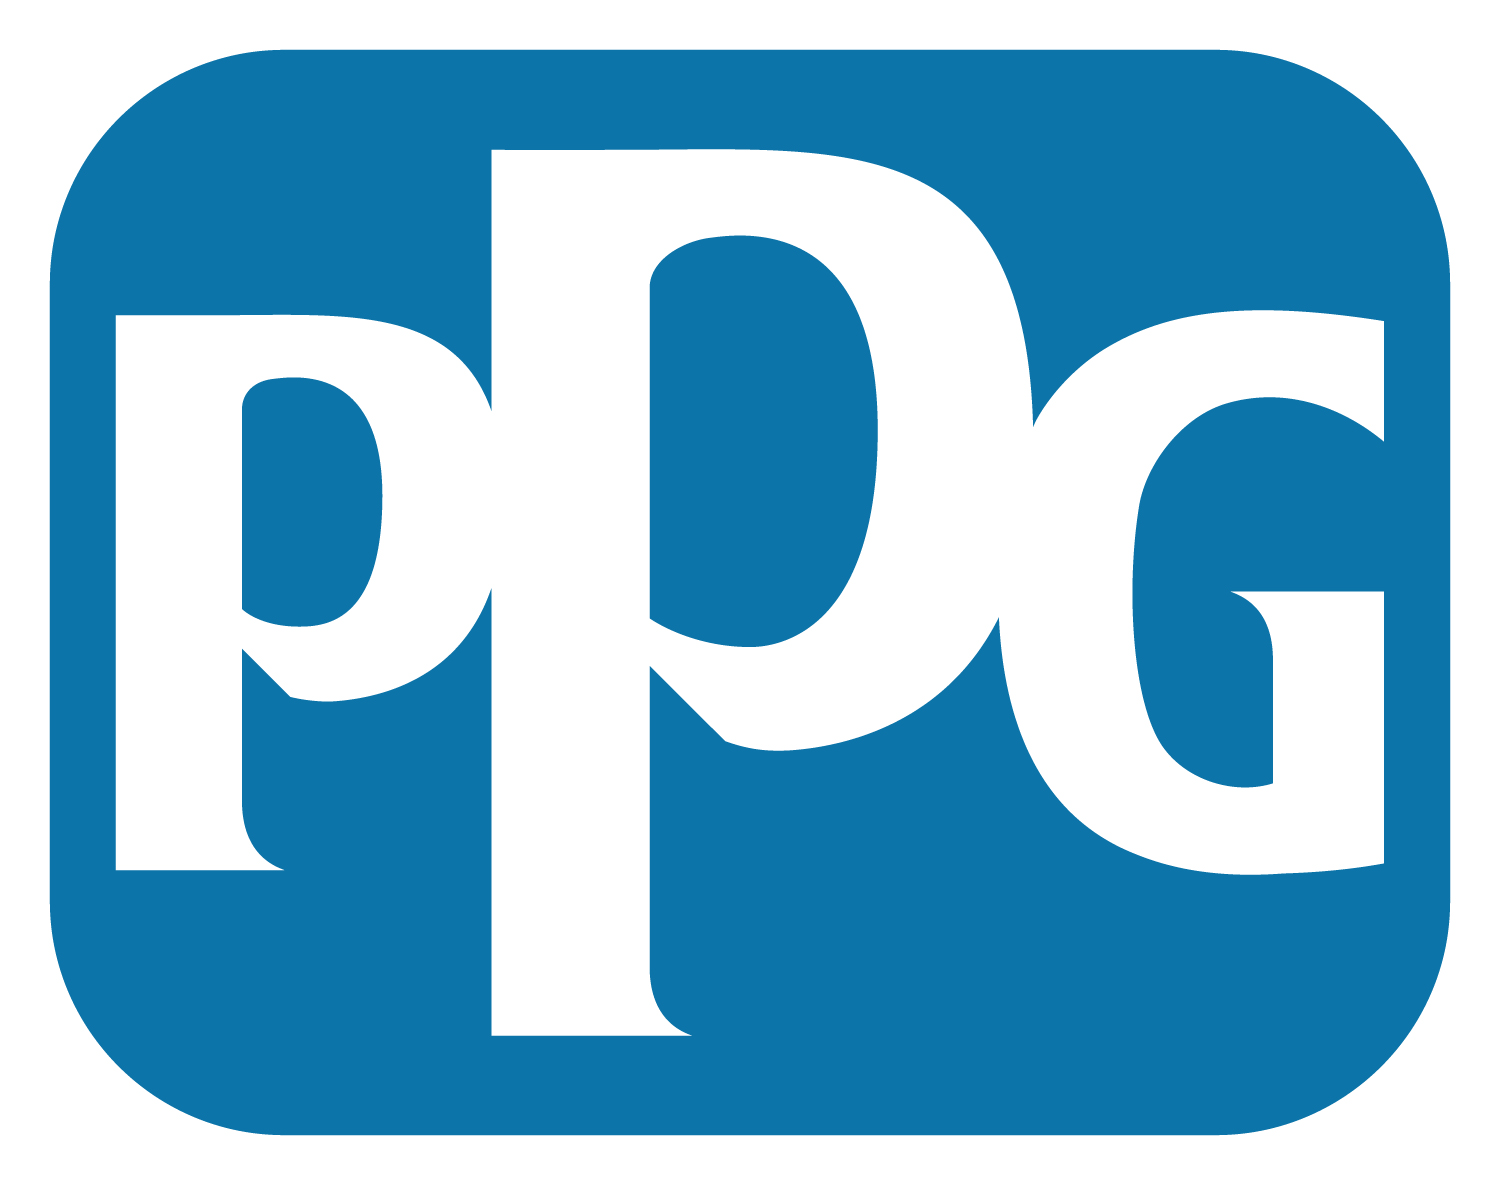 PPG
Deutschland Sales & Services GmbH